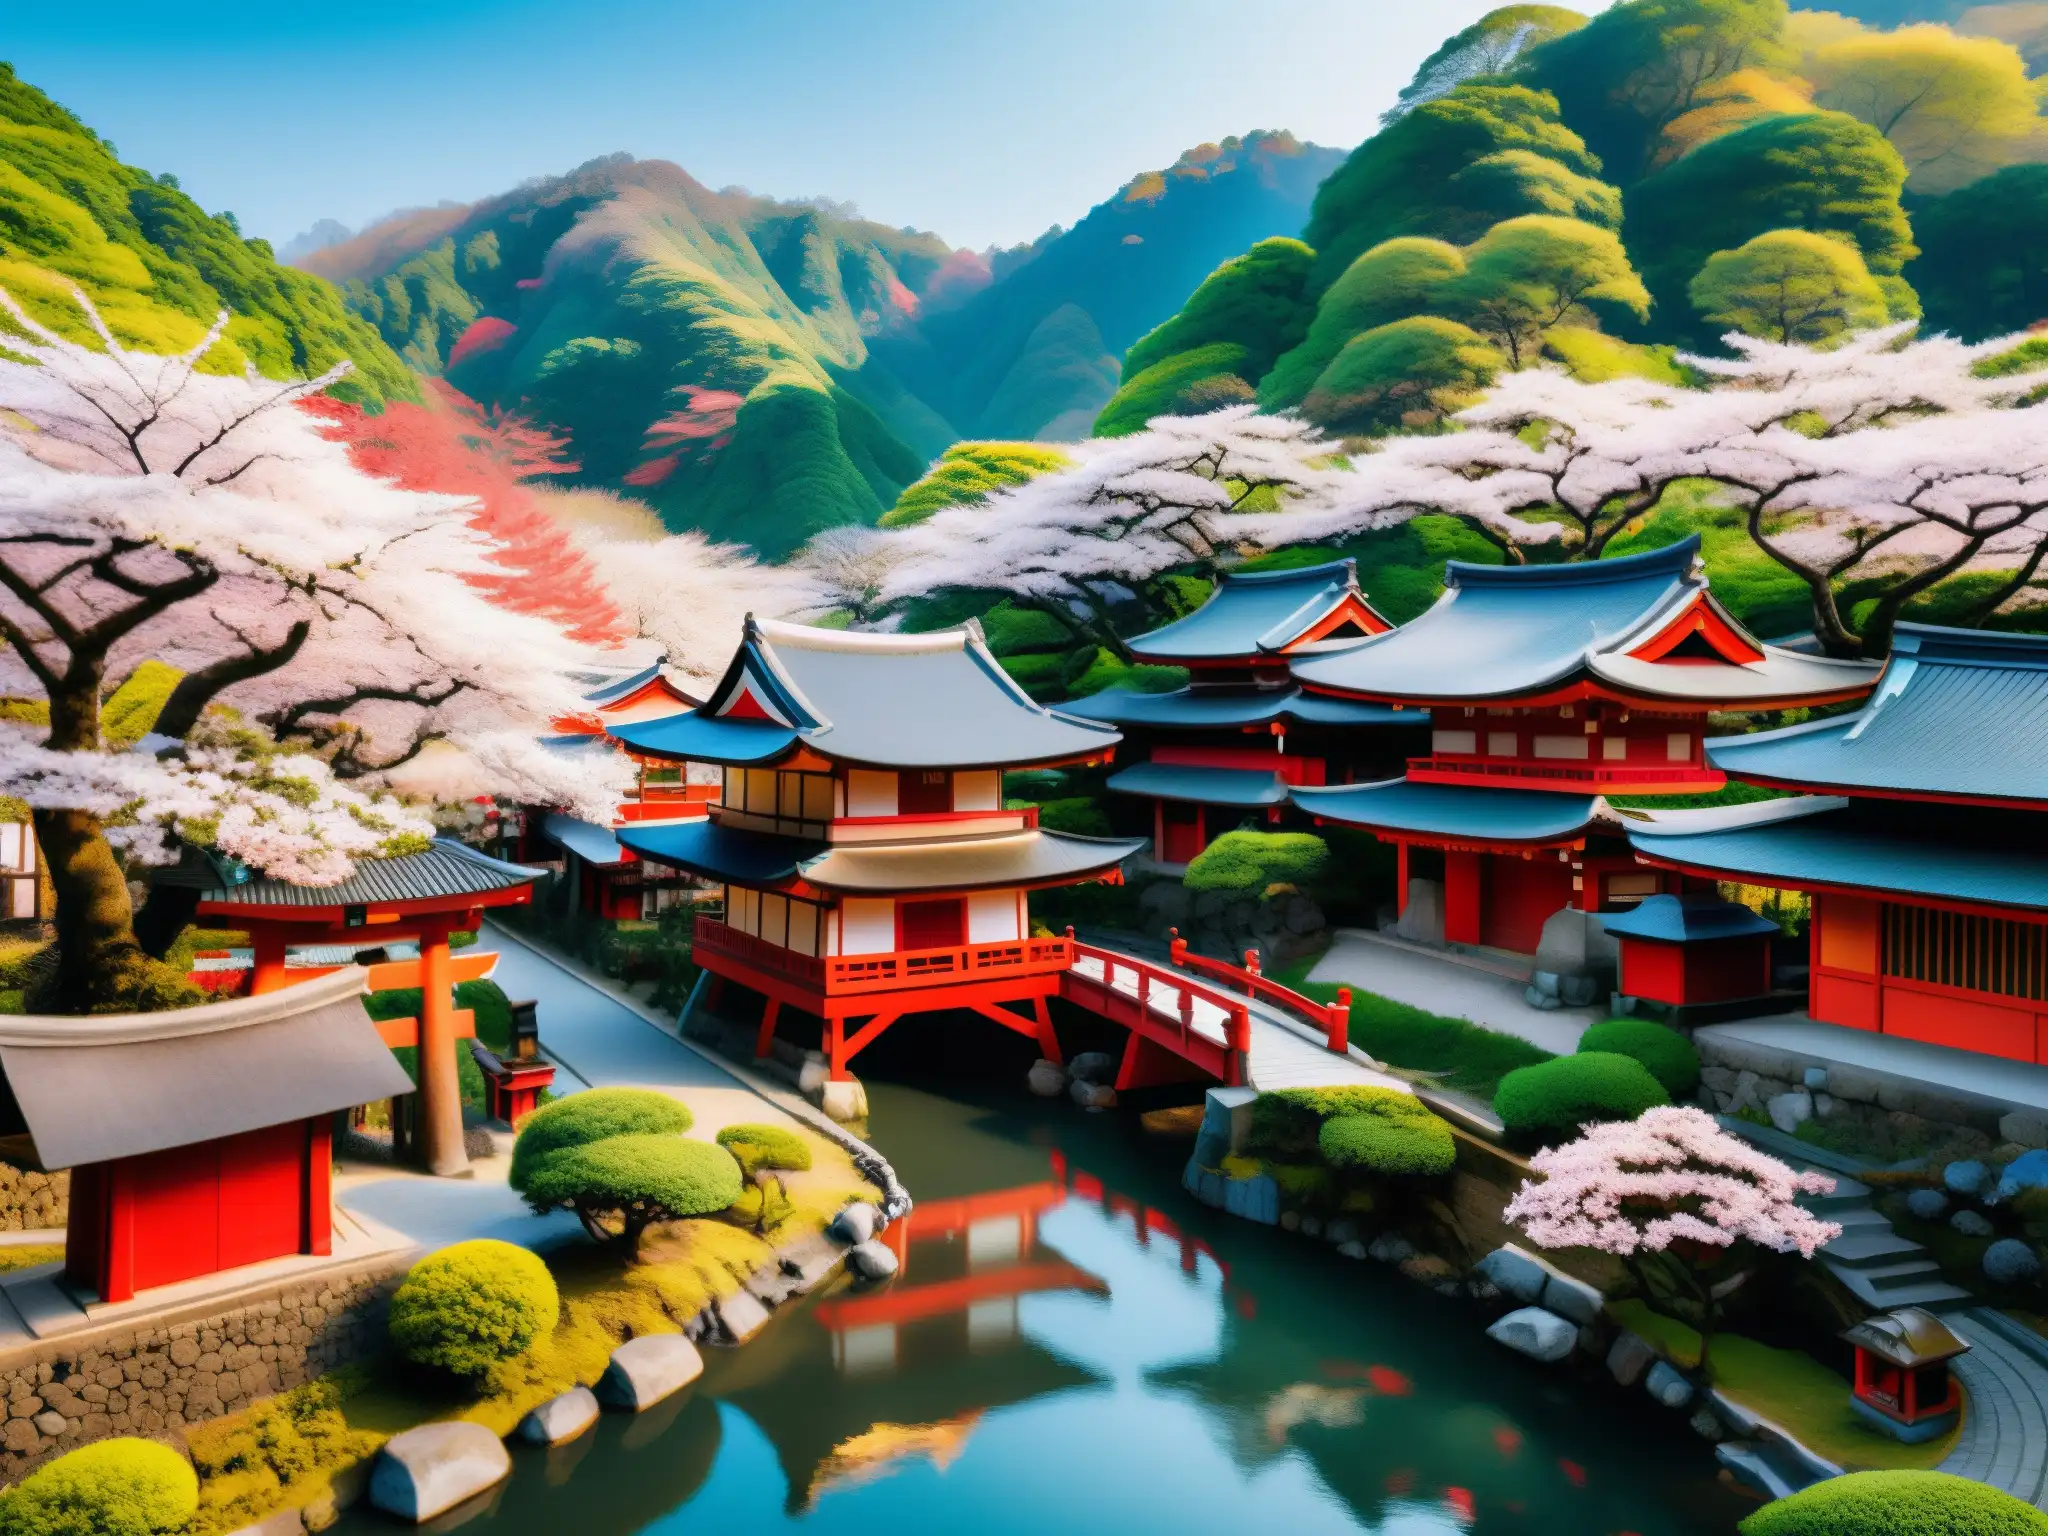 Un pueblo japonés tradicional rodeado de cerezos en flor, con un río serpenteante y un santuario en primer plano